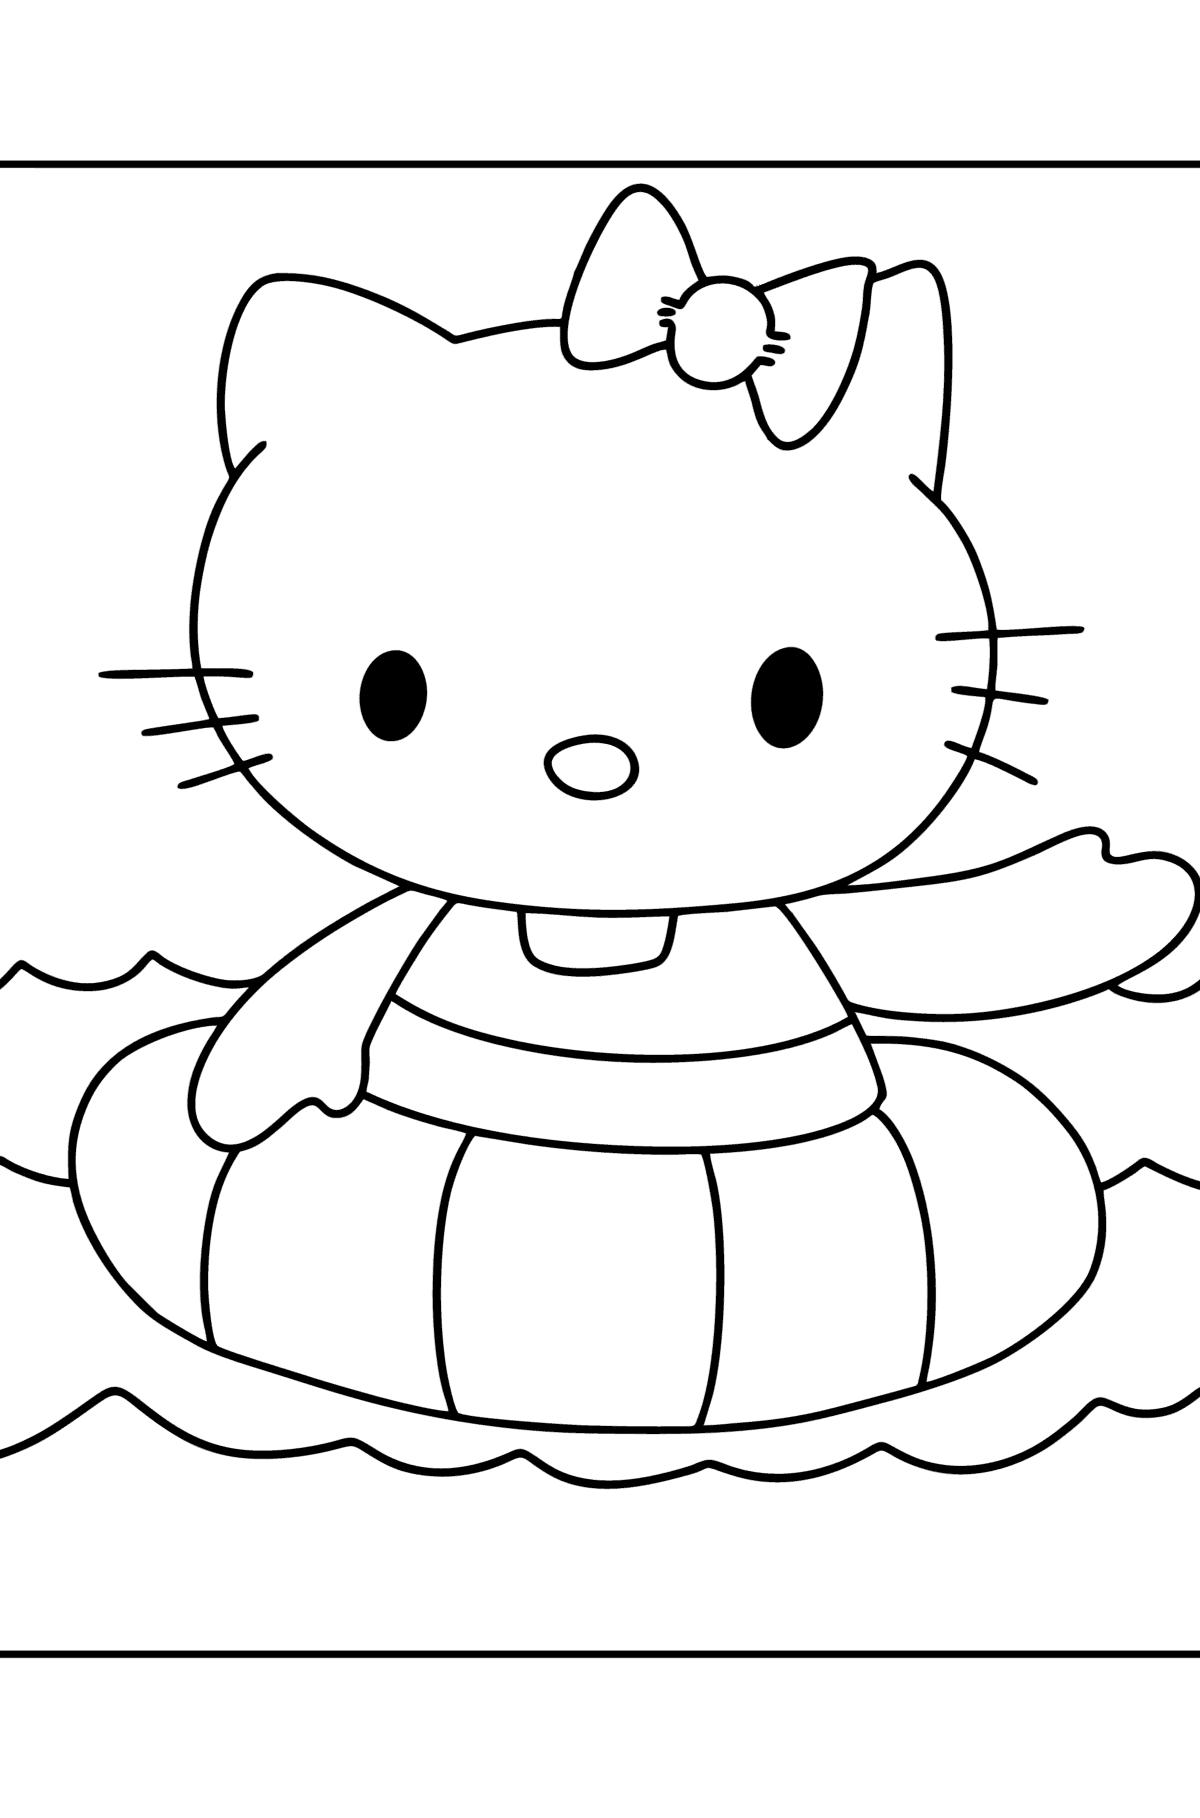 Tegning til fargelegging Hello Kitty svømmer - Tegninger til fargelegging for barn